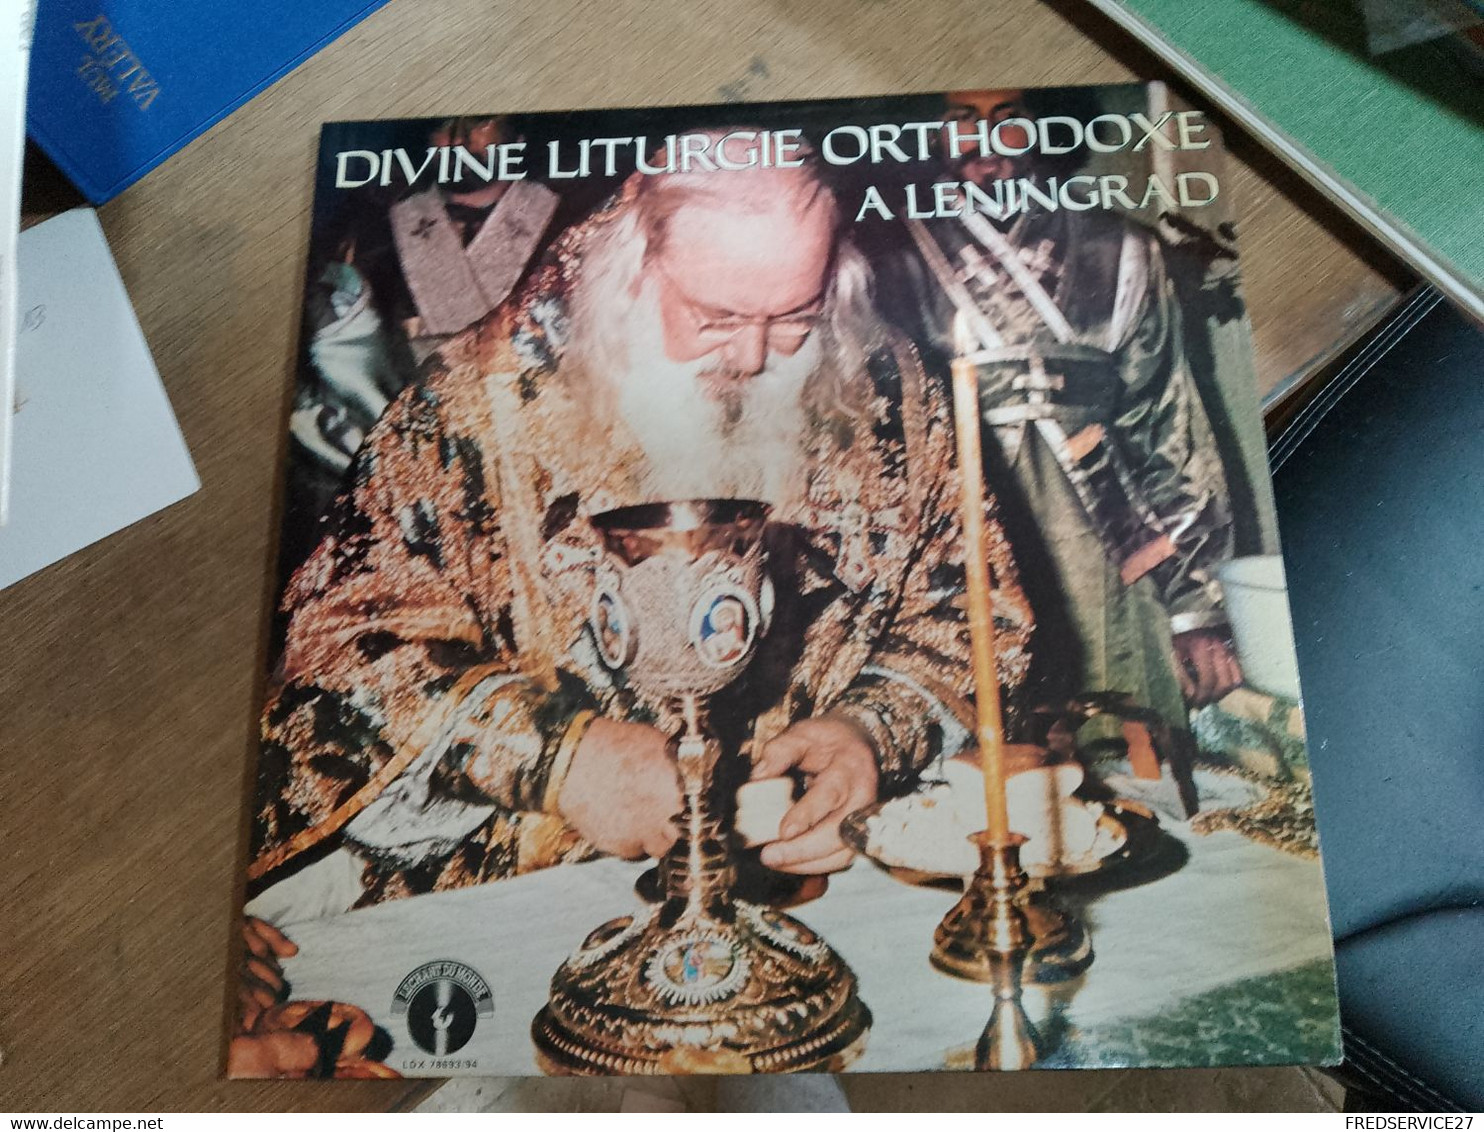 63 // DIVINE LITURGIE ORTHODOXE A LENINGRAD 2 DISQUES / CANTIQUESPOUR L'ANNEE LITURGIQUE - Religion & Gospel